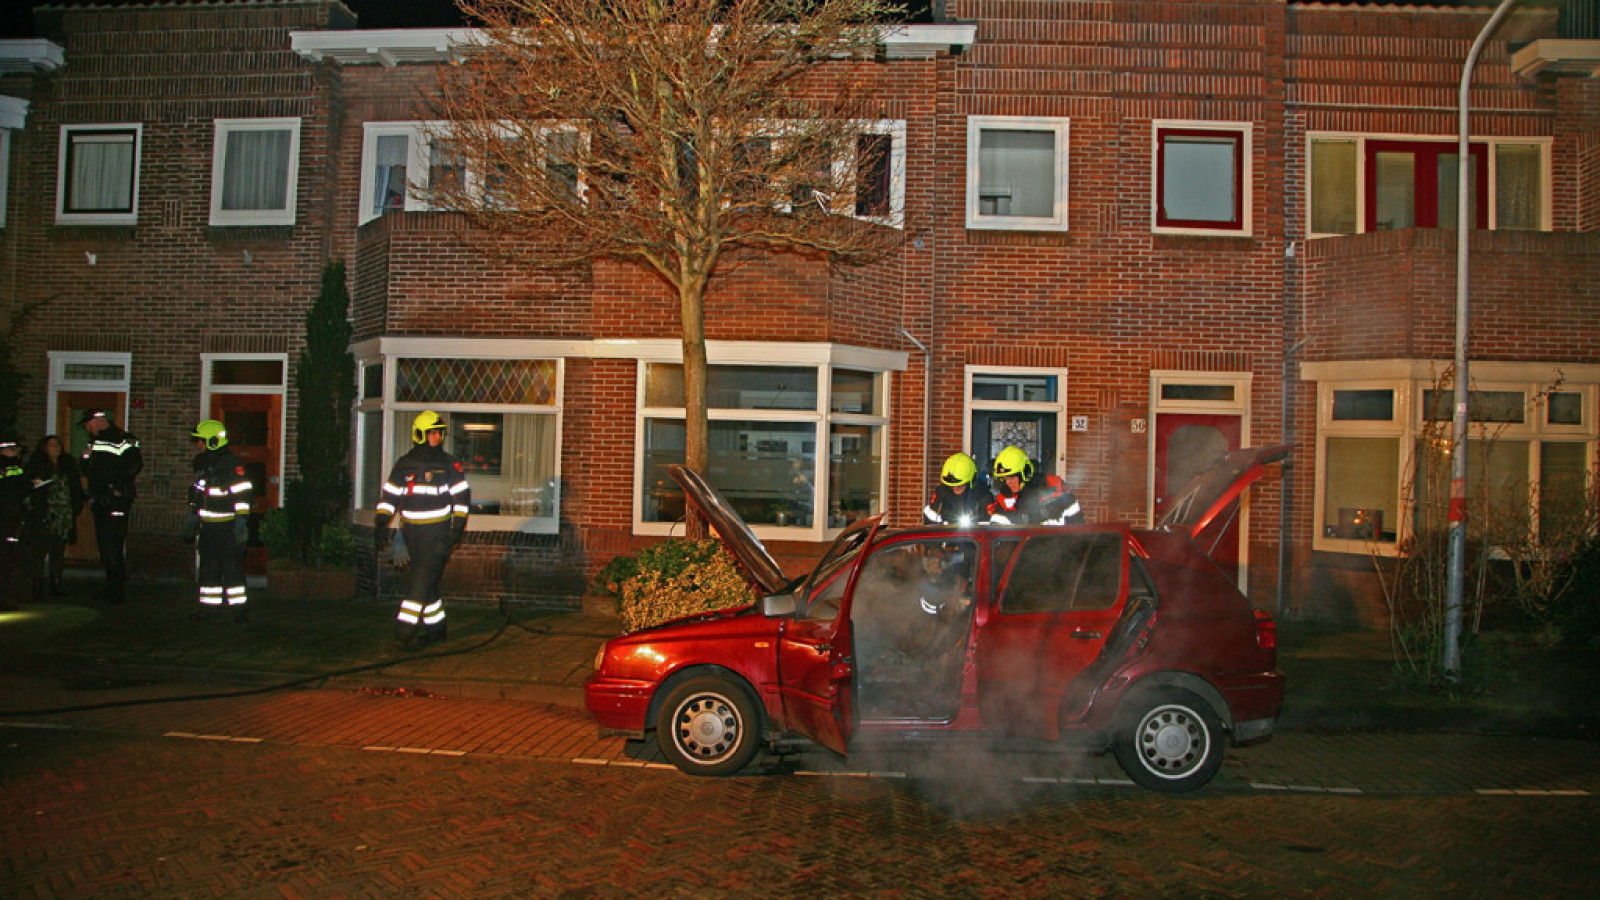 Vrouw zet brandende auto aan de kant in Haarlem - NH Nieuws